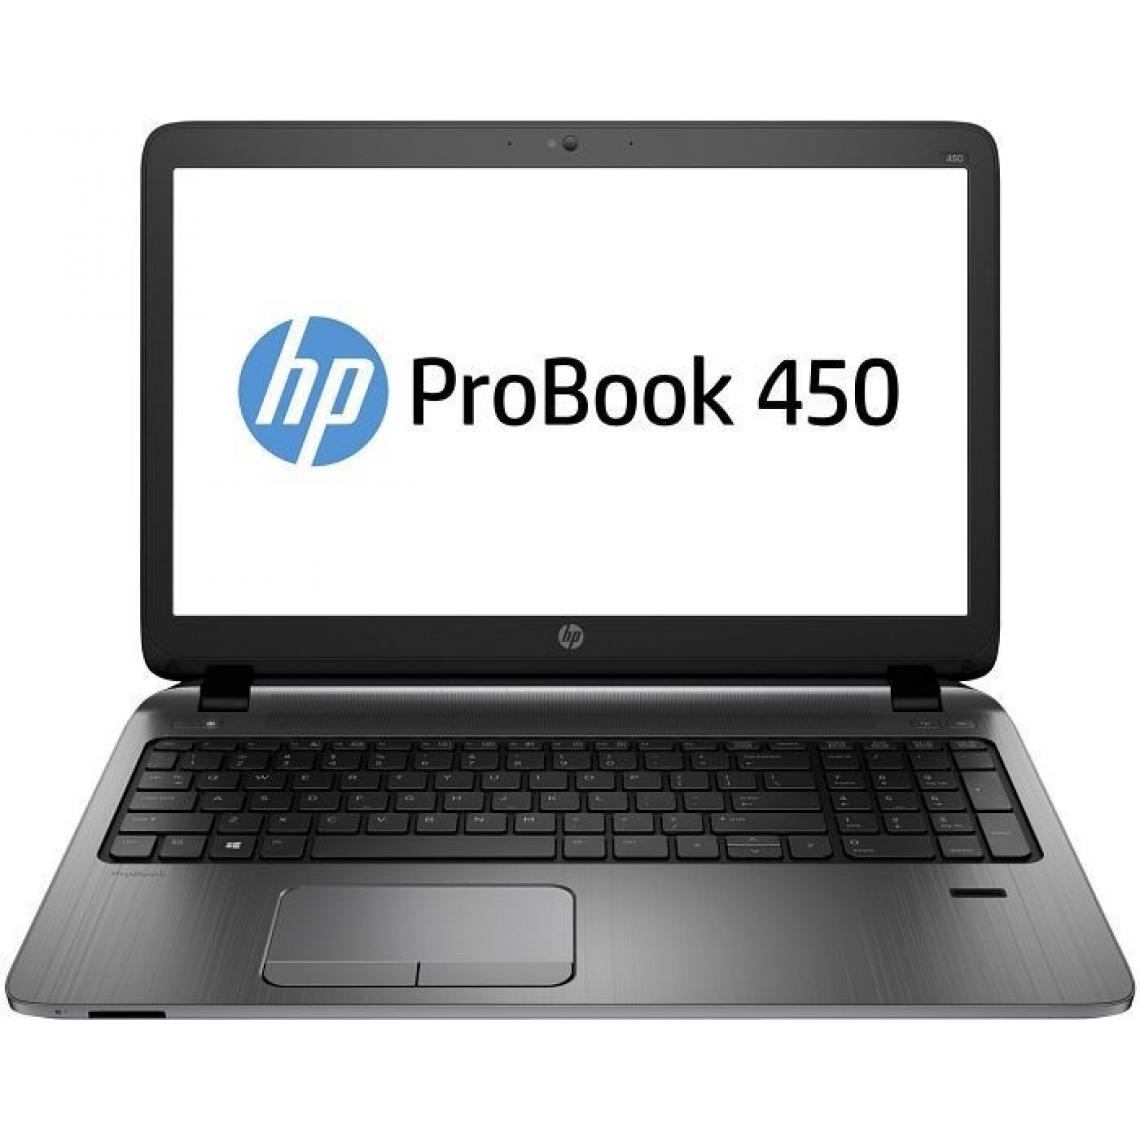 Hp - HP ProBook 450 G2 15" Core i5 1,7 GHz ProBook 450 G2 - PC Portable